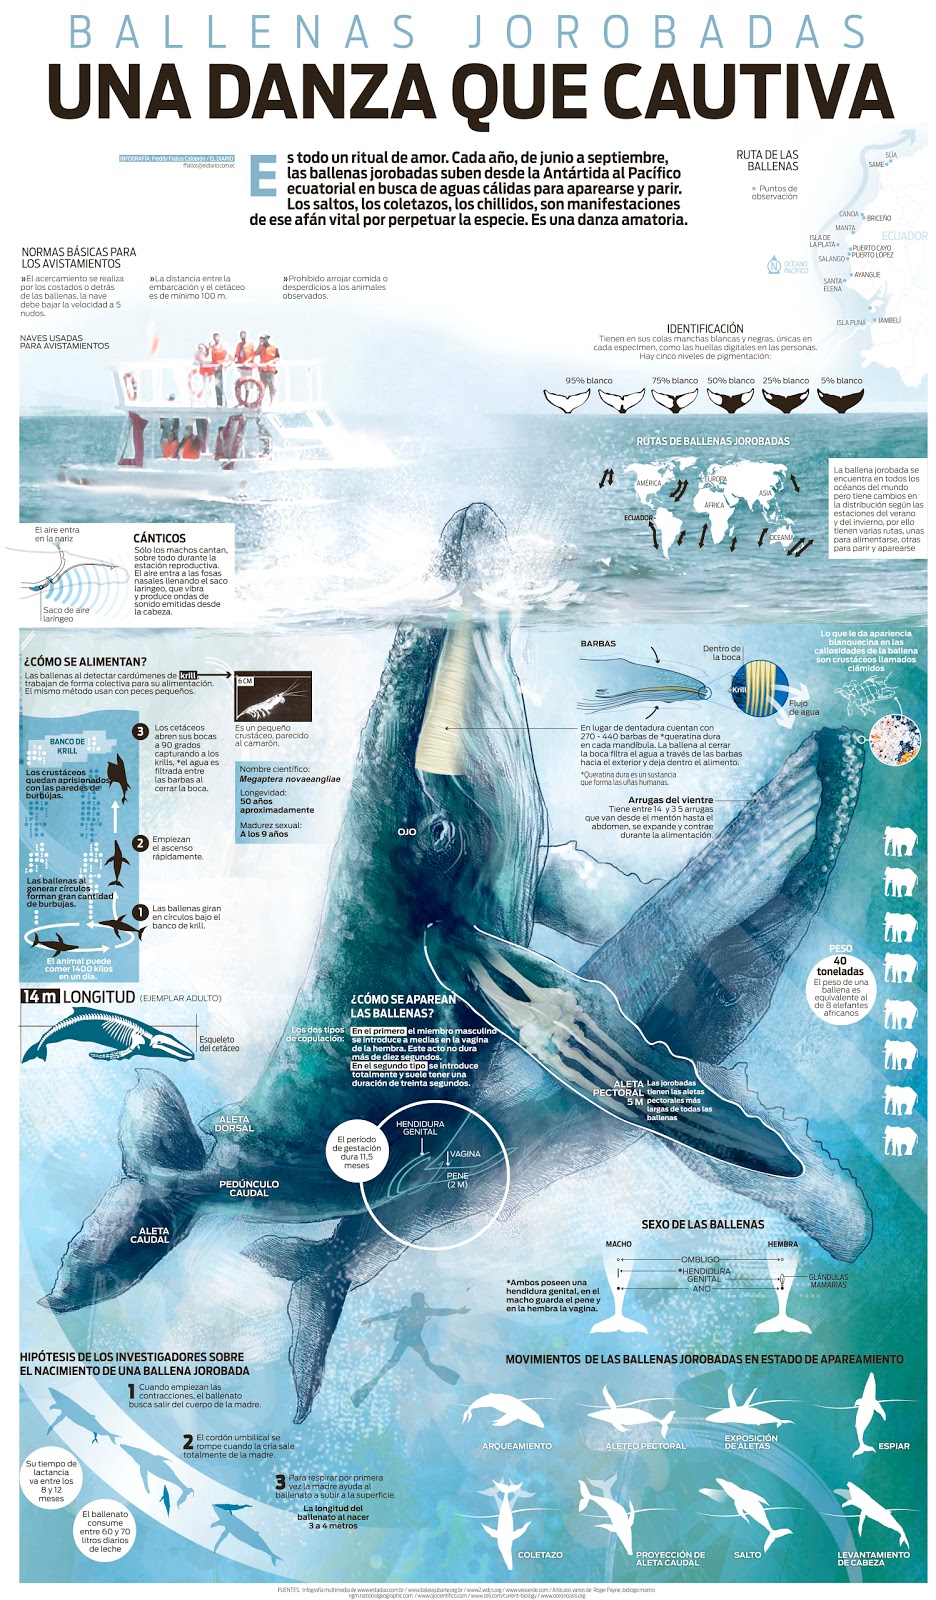 Infografía ballenas jorobadas